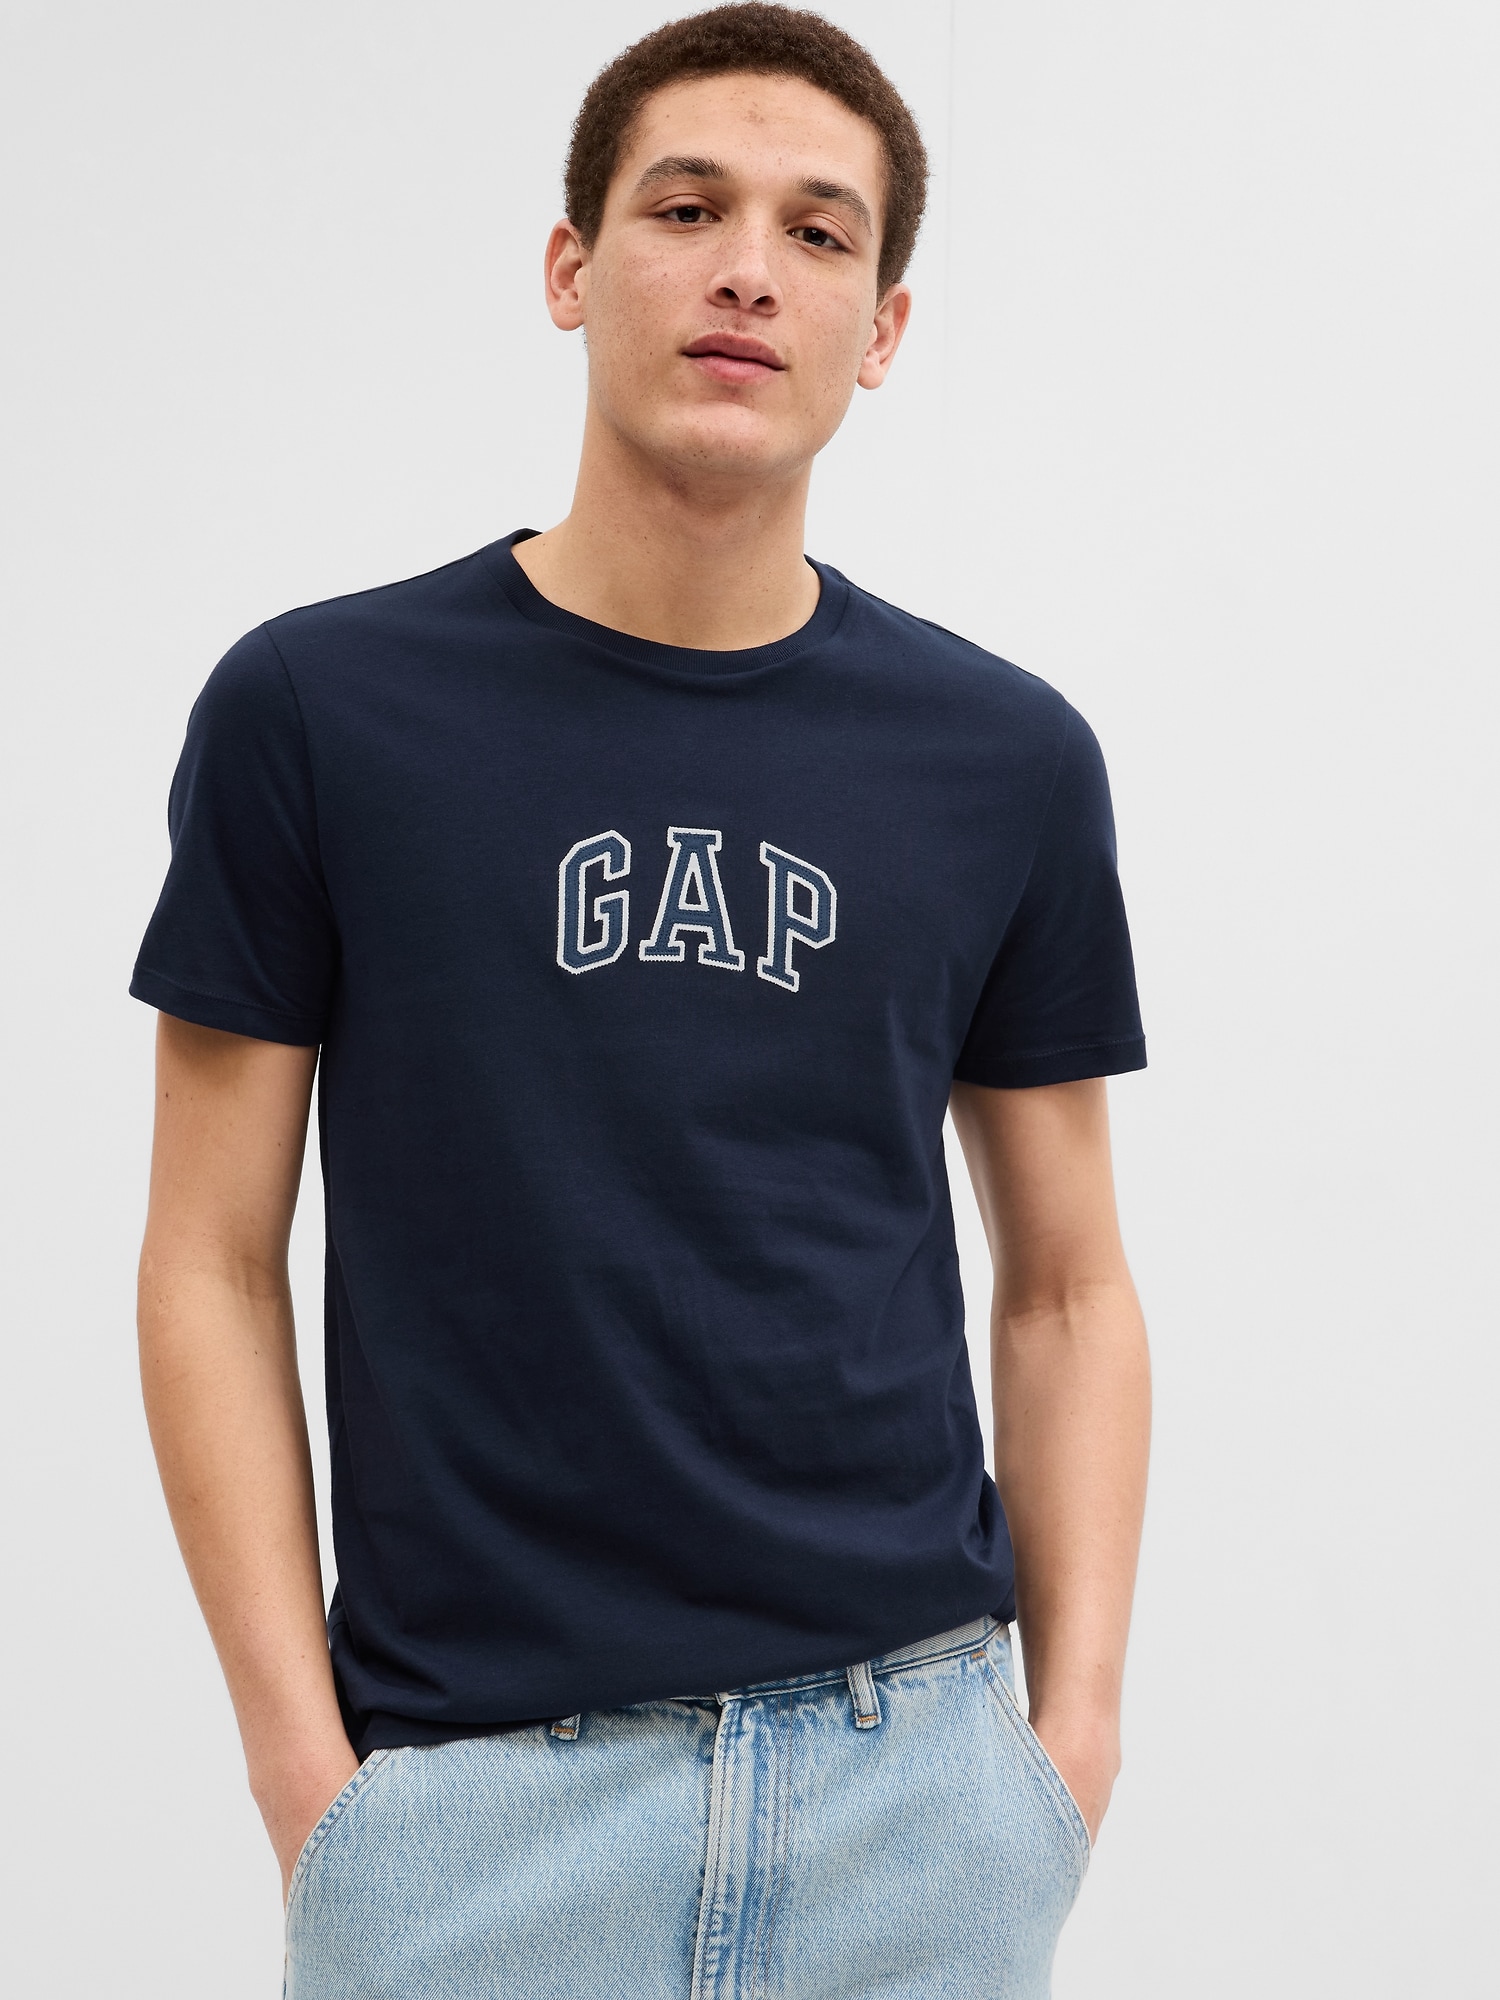 Gapアーチロゴtシャツ(ユニセックス)